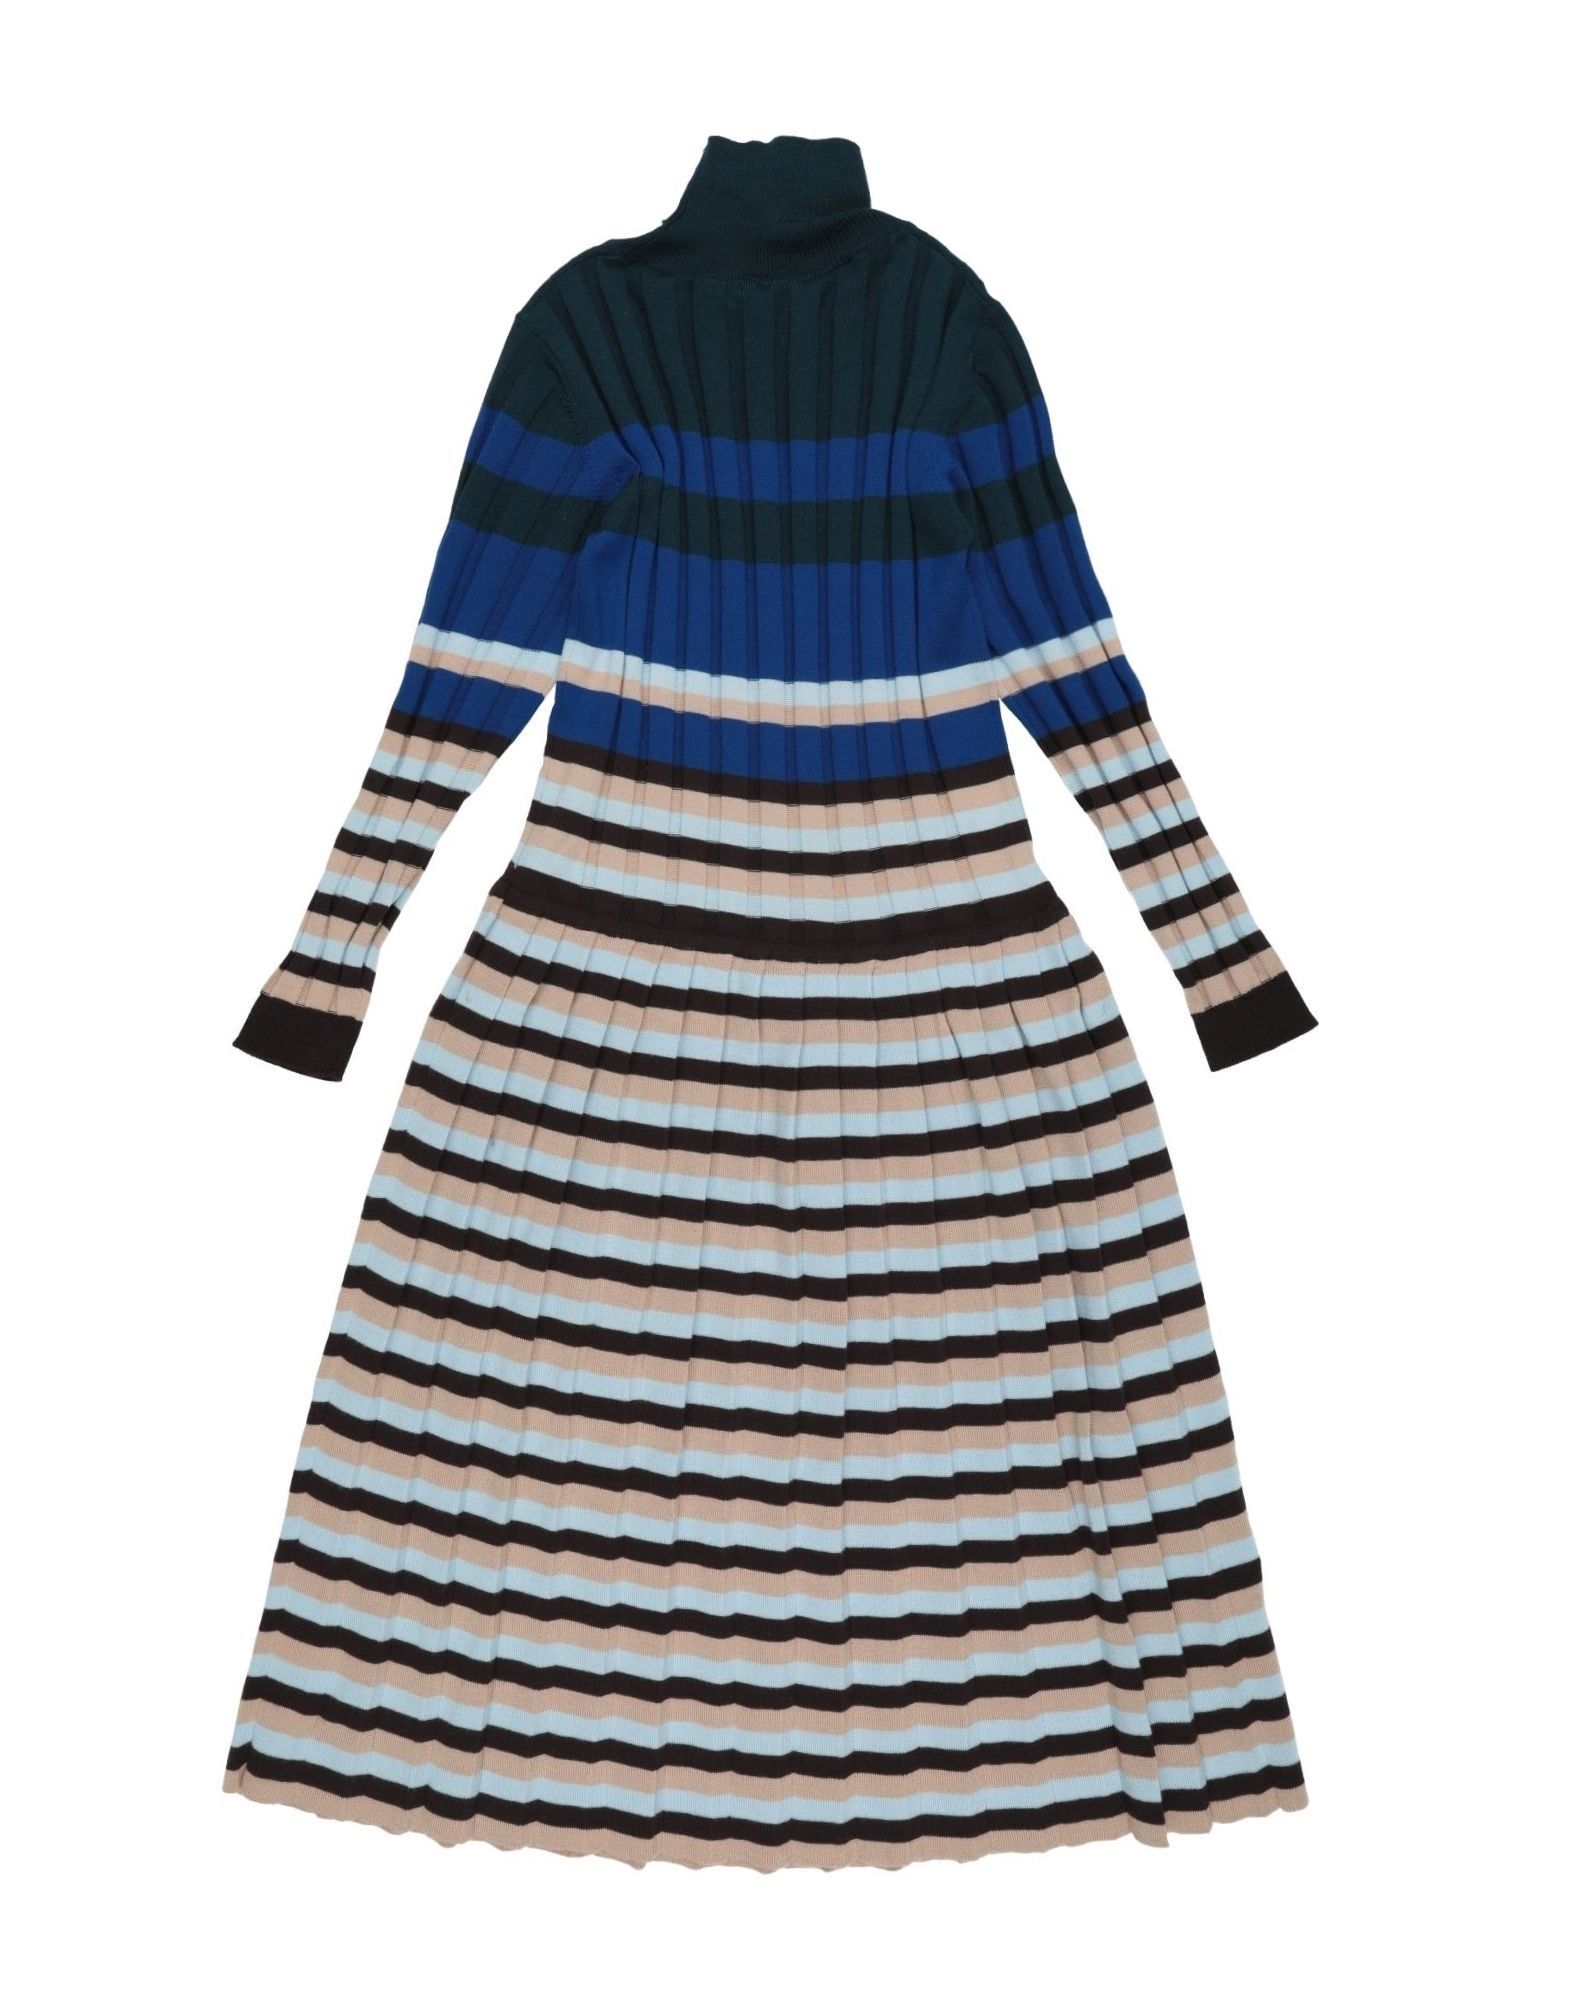 Marni Girl Kids’ Virgin Wool Dress in Blue